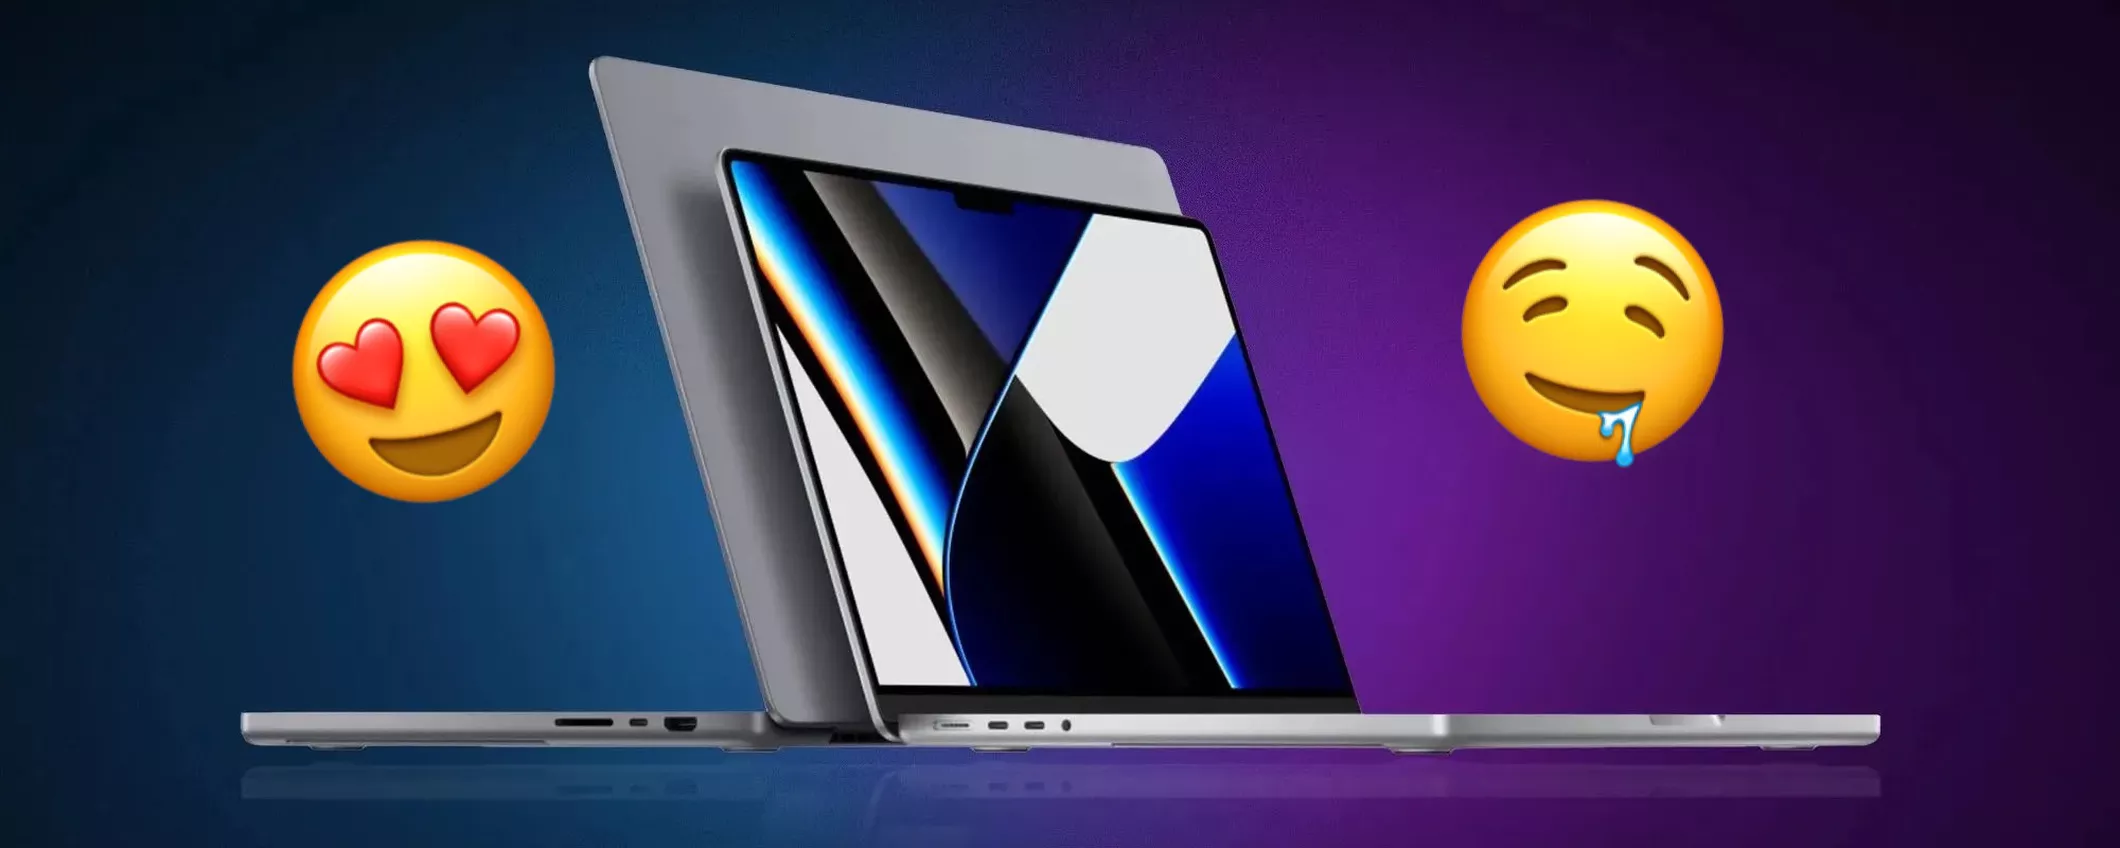 MacBook Air o Pro? Se non aveste limiti di budget, quale comprereste?